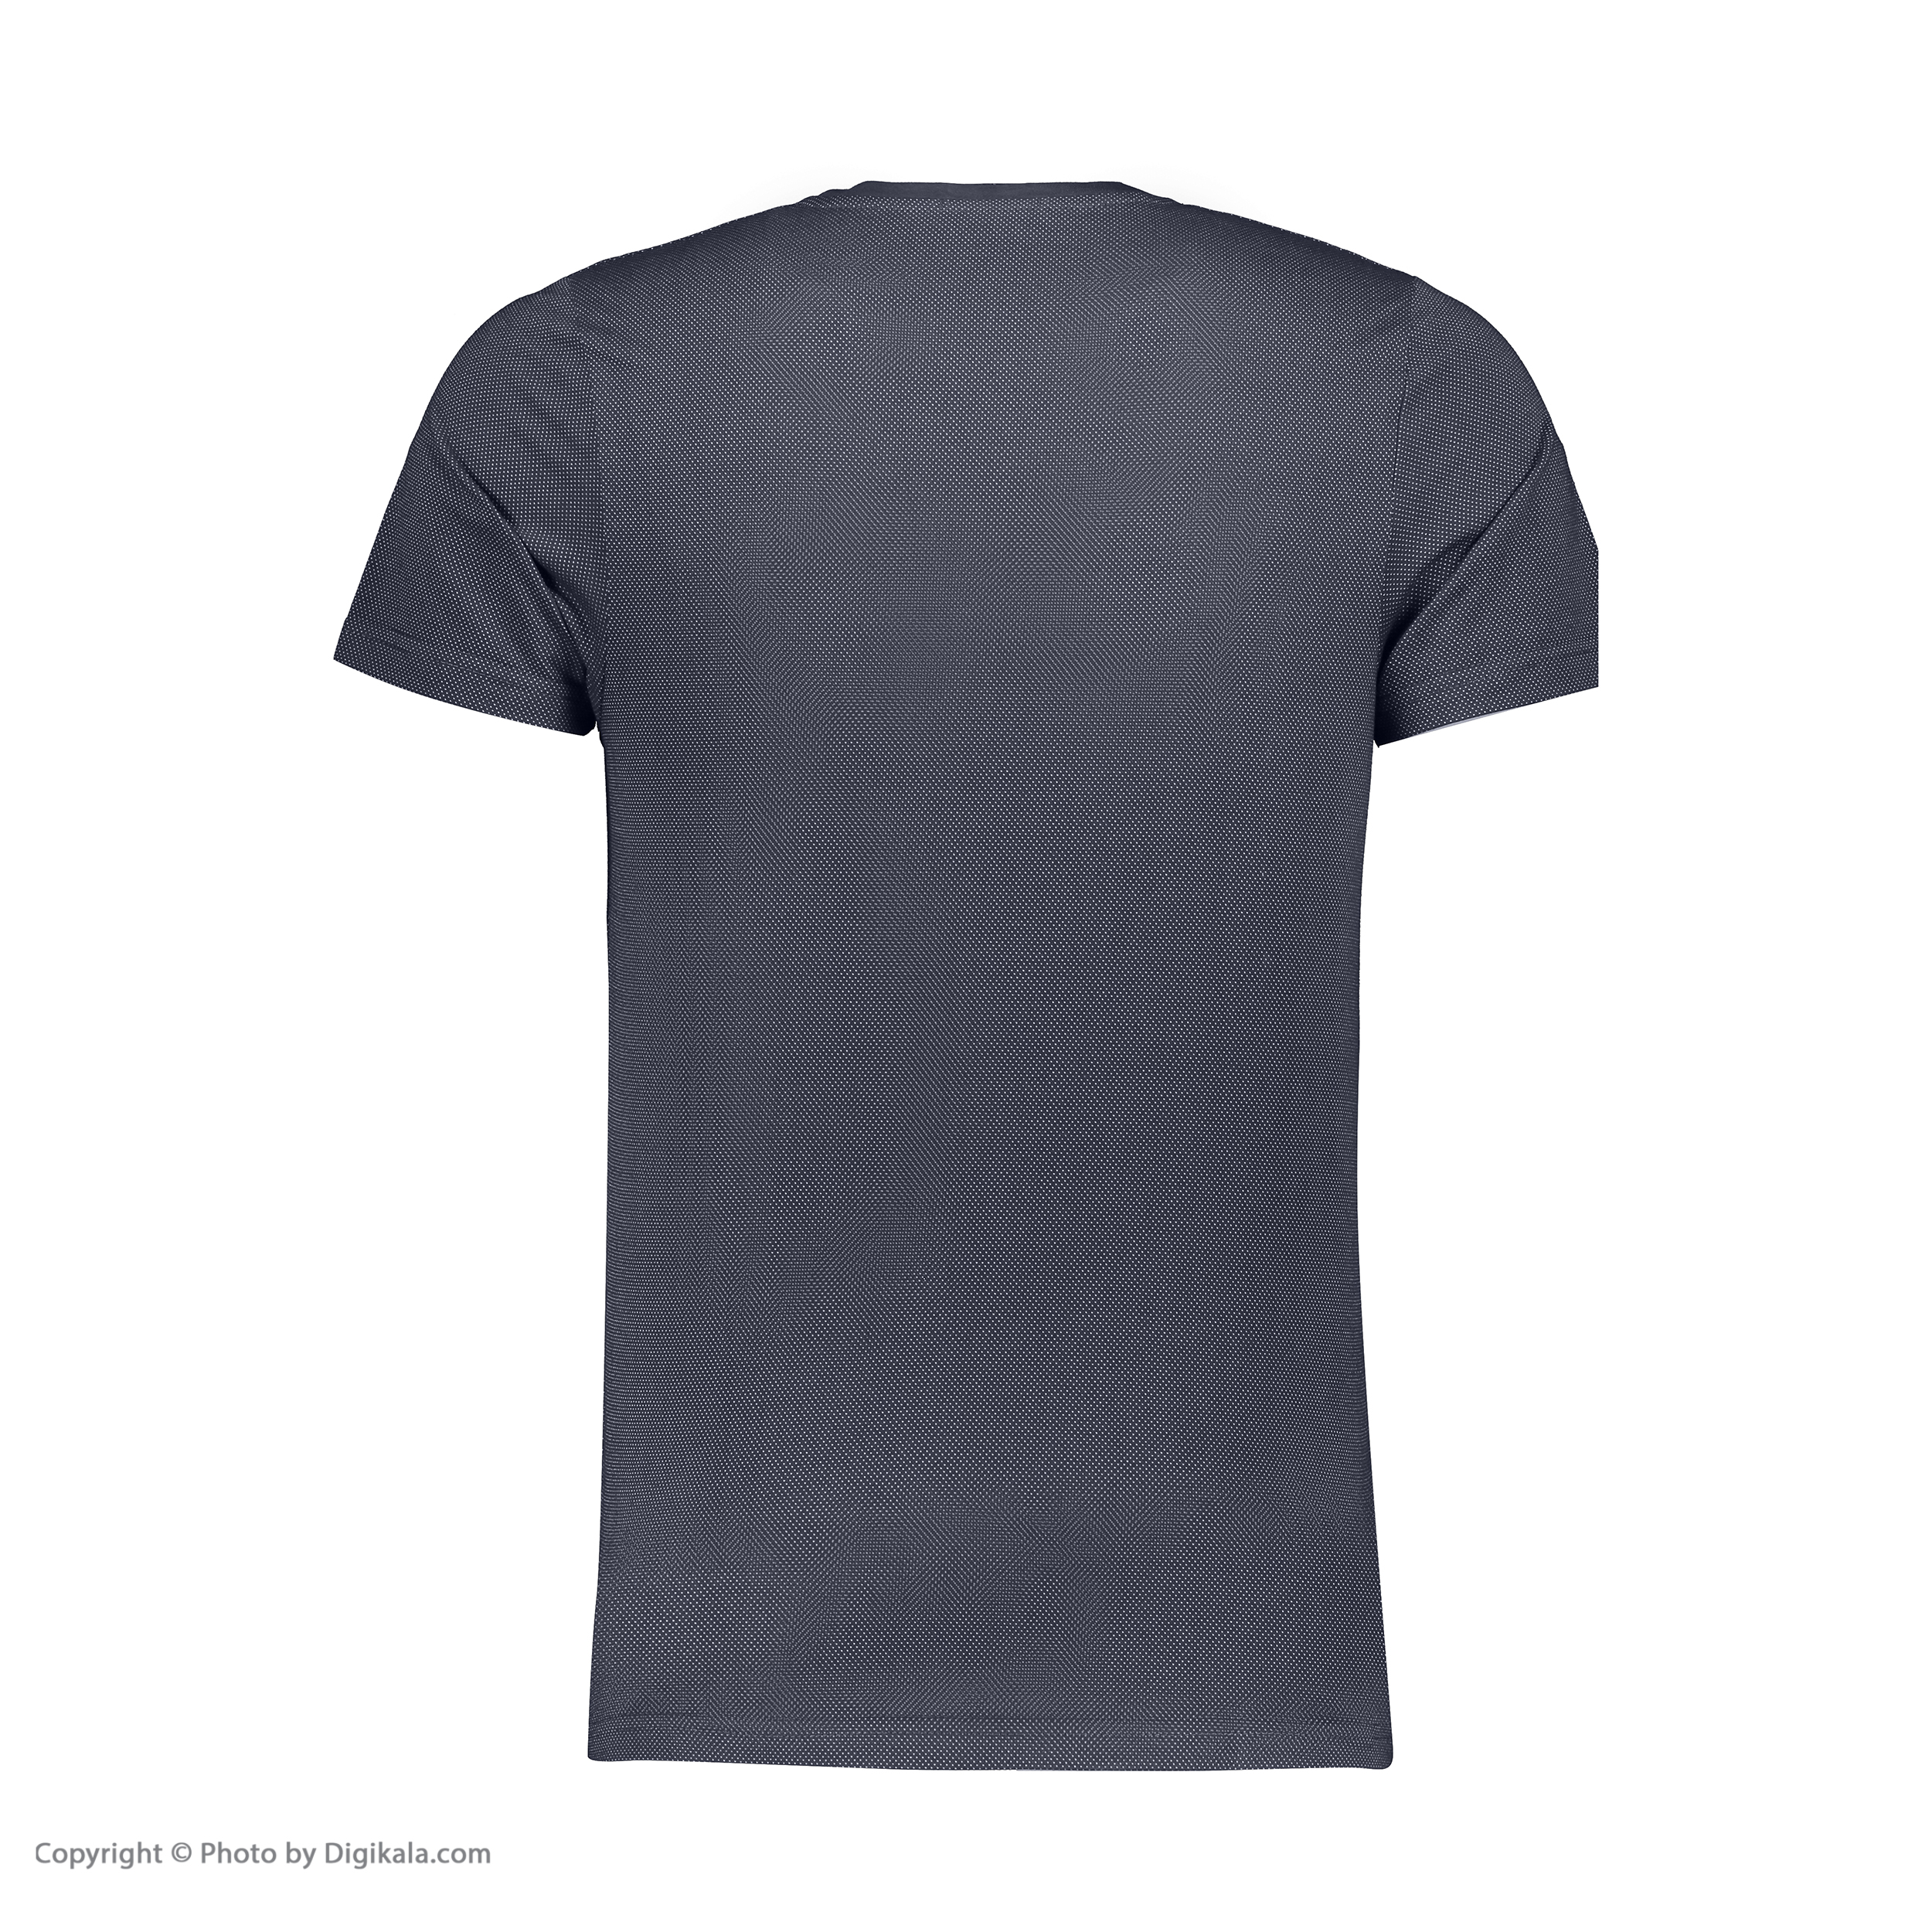 تی شرت مردانه آر ان اس مدل 1131143-59